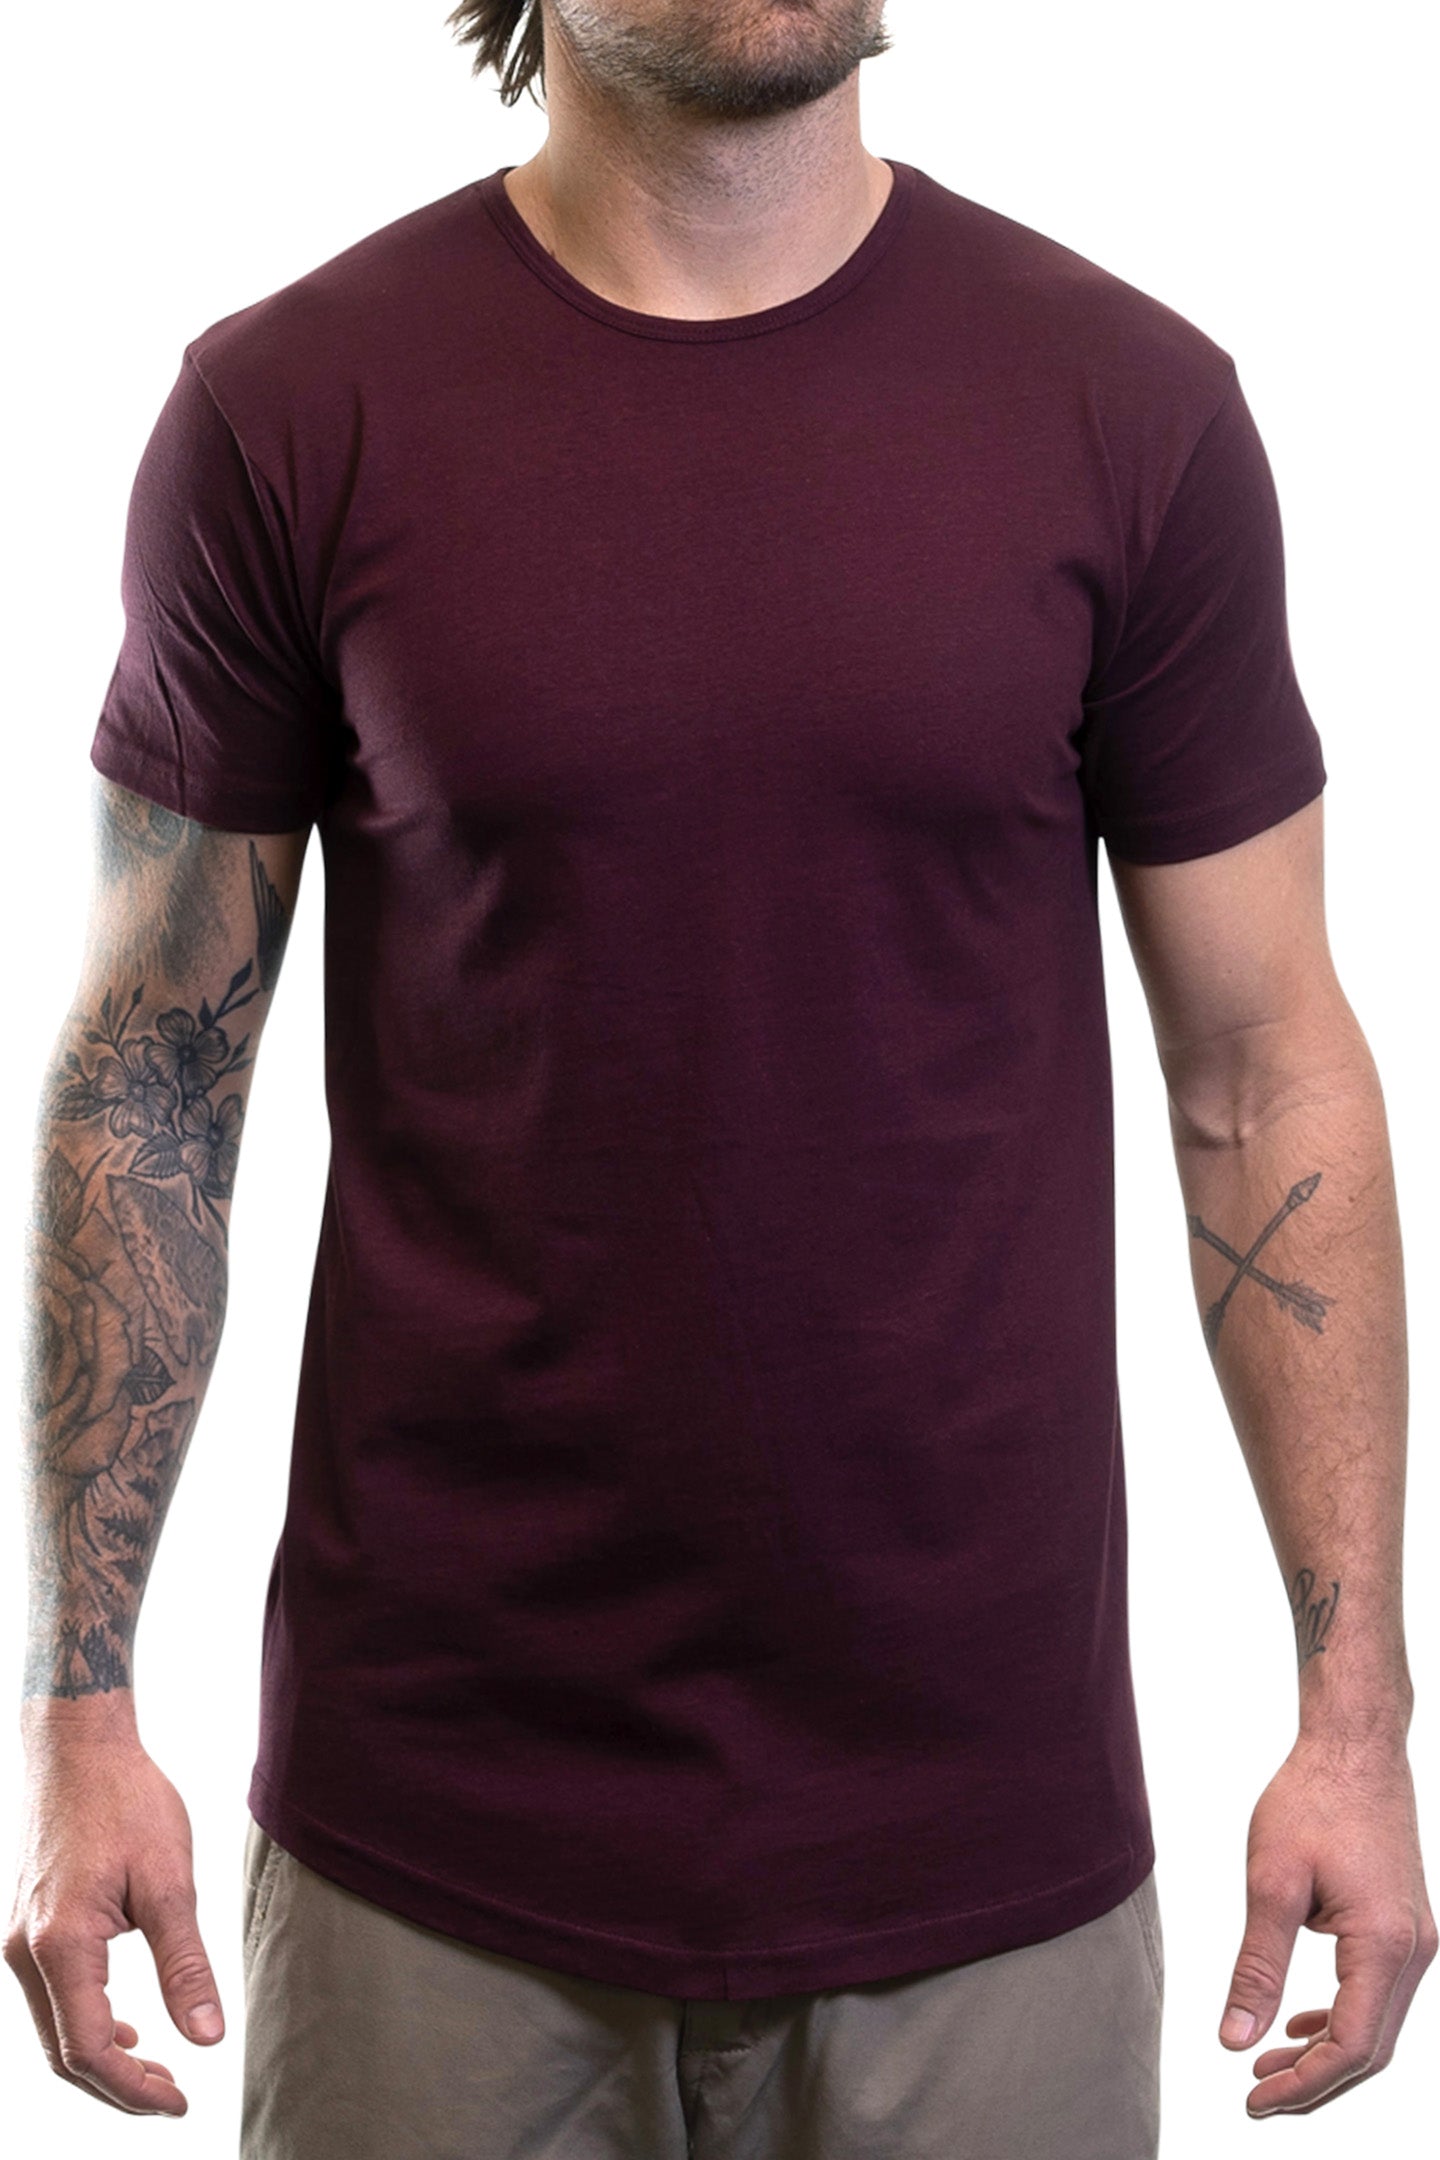 Essential Drop Cut Shirts - Solid Colors